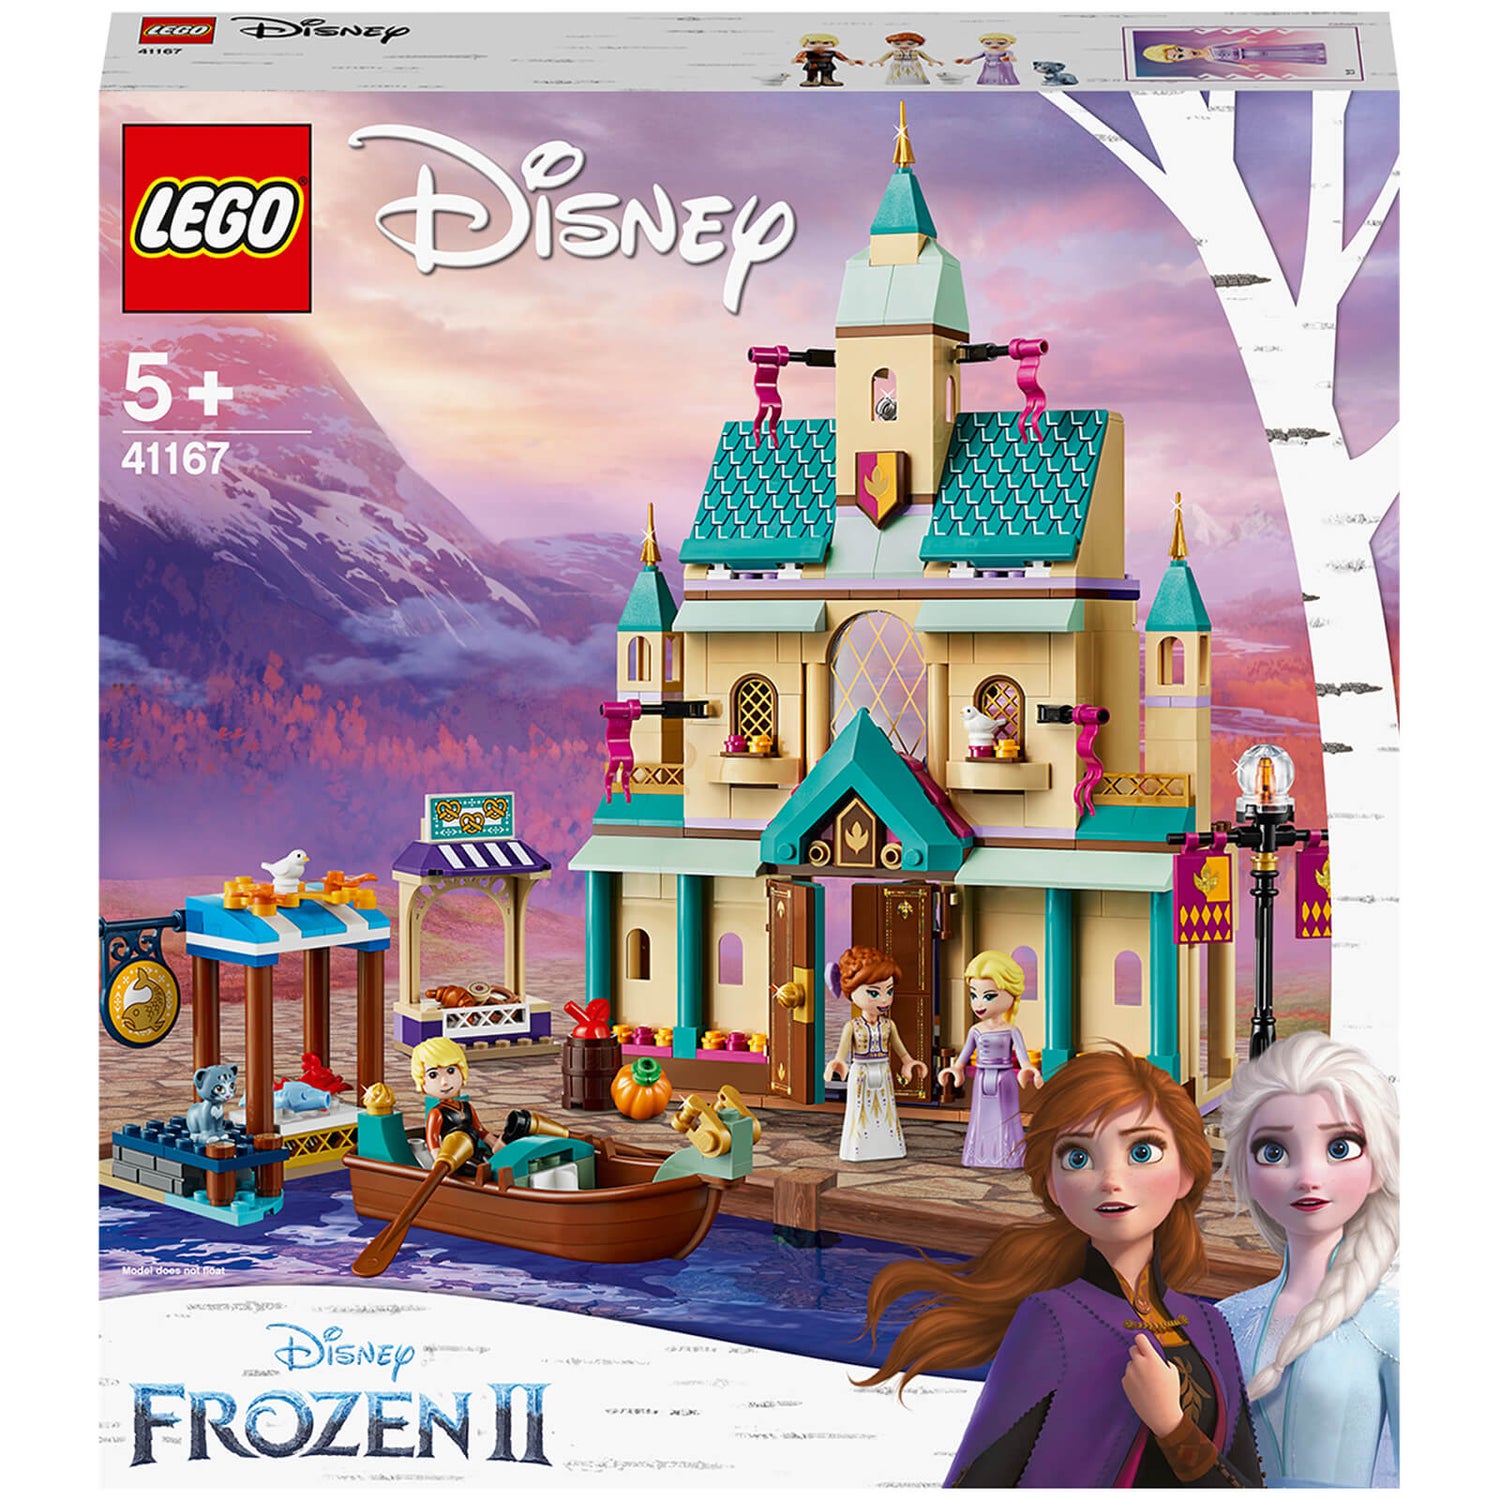 Negen Bedankt onduidelijk LEGO Disney Frozen II: Arendelle kasteel dorp speelgoed (41167) | Zavvi.nl